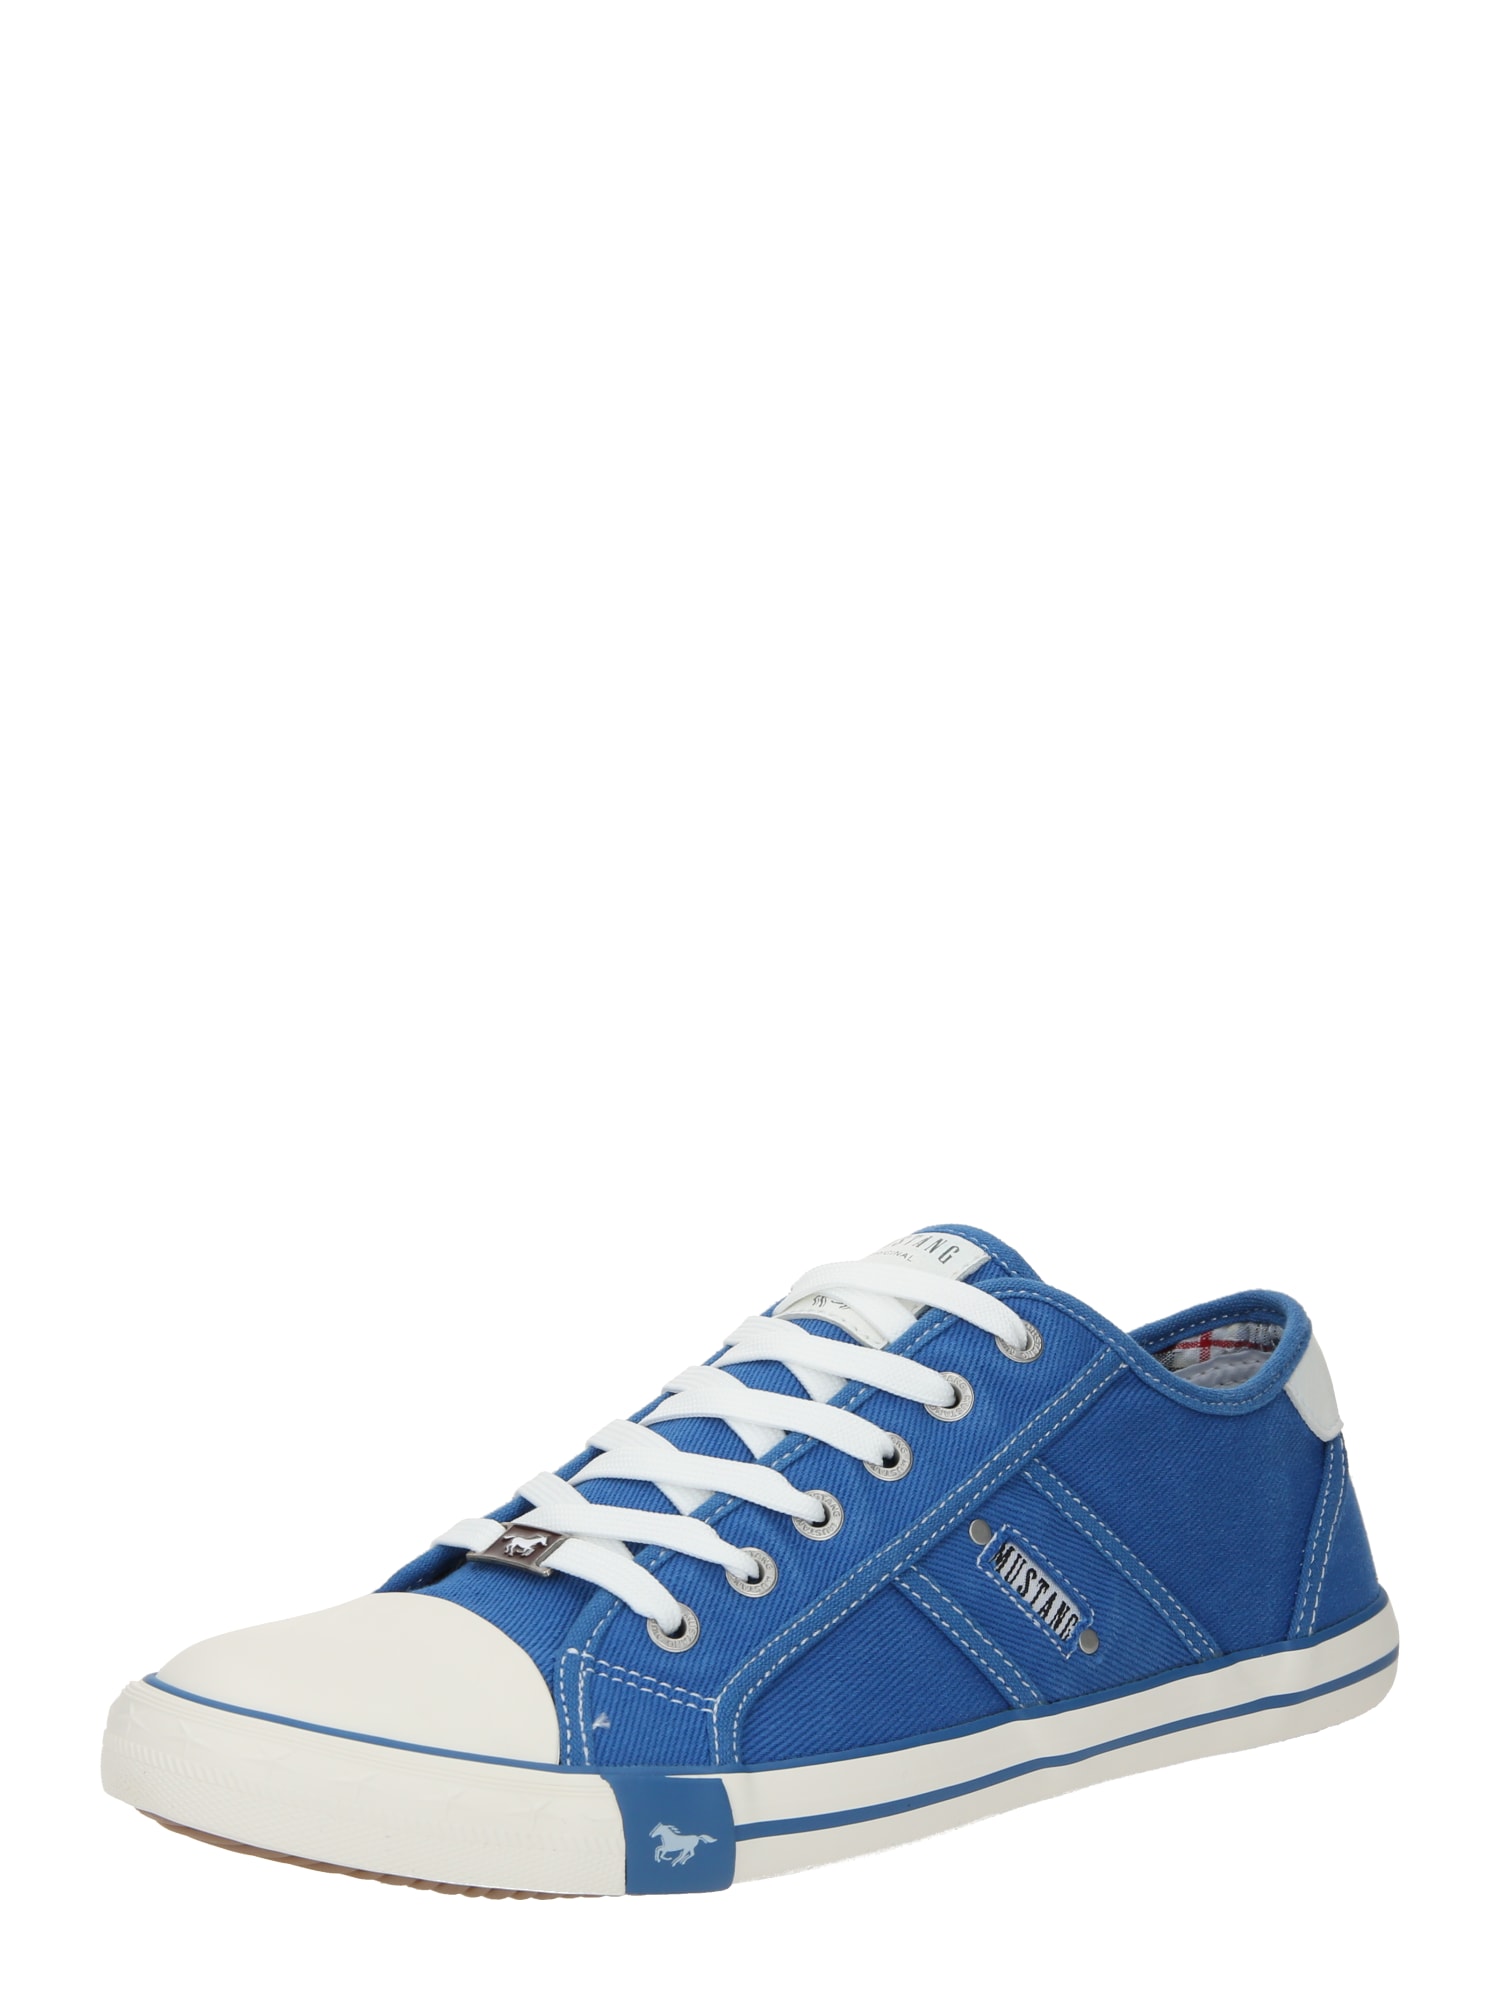 MUSTANG Sneaker low  albastru regal / alb